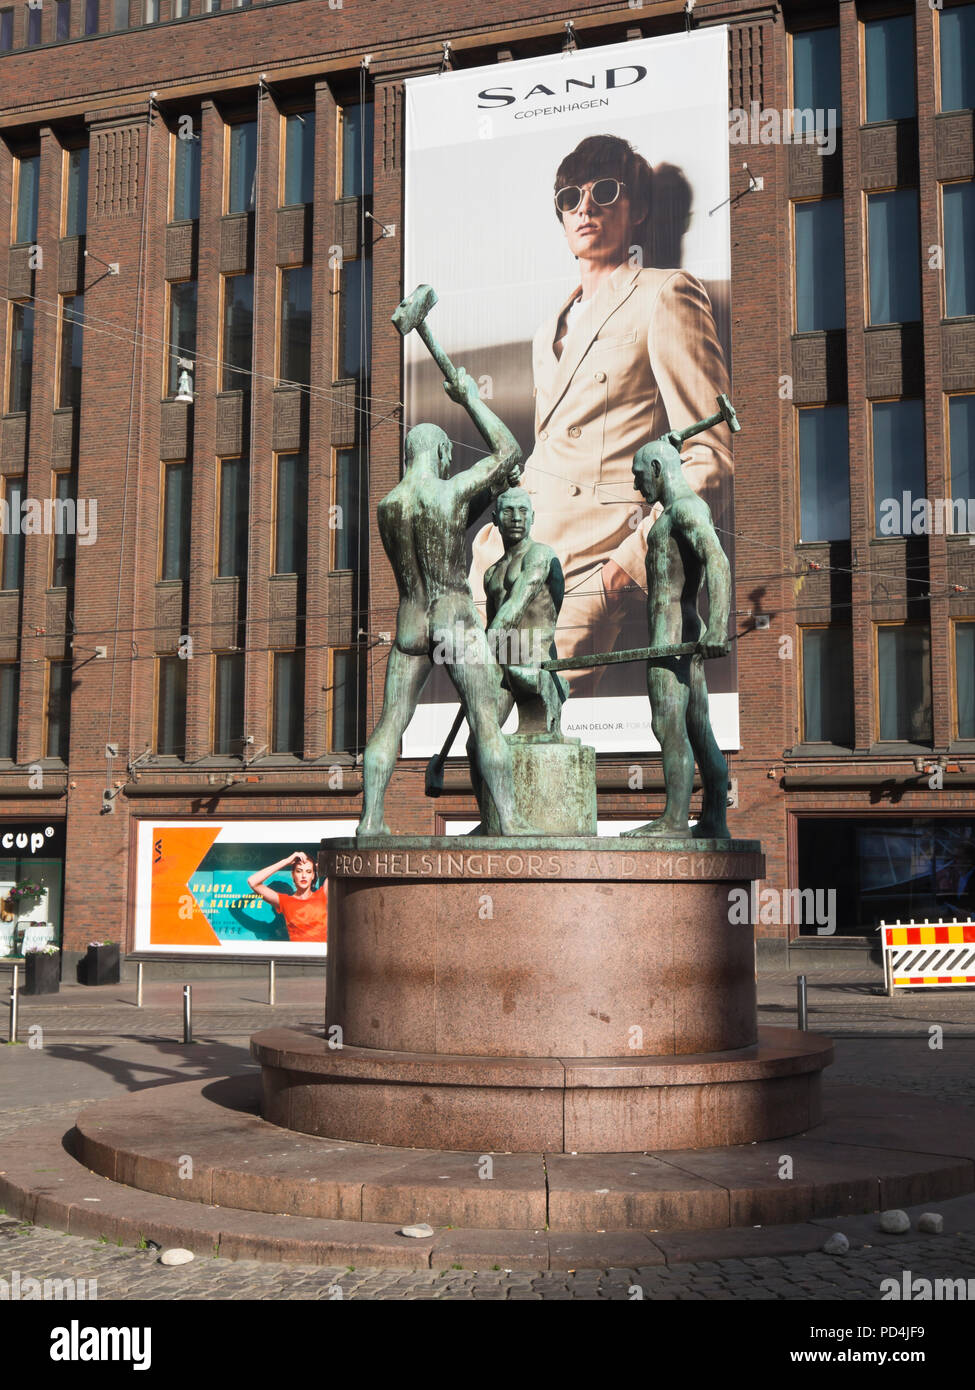 Stili di vita contrapposti nel centro di Helsinki in Finlandia, la scultura di ironworkers industriale in bronzo adagiato contro un gigant board la promozione del marchio di sabbia Foto Stock